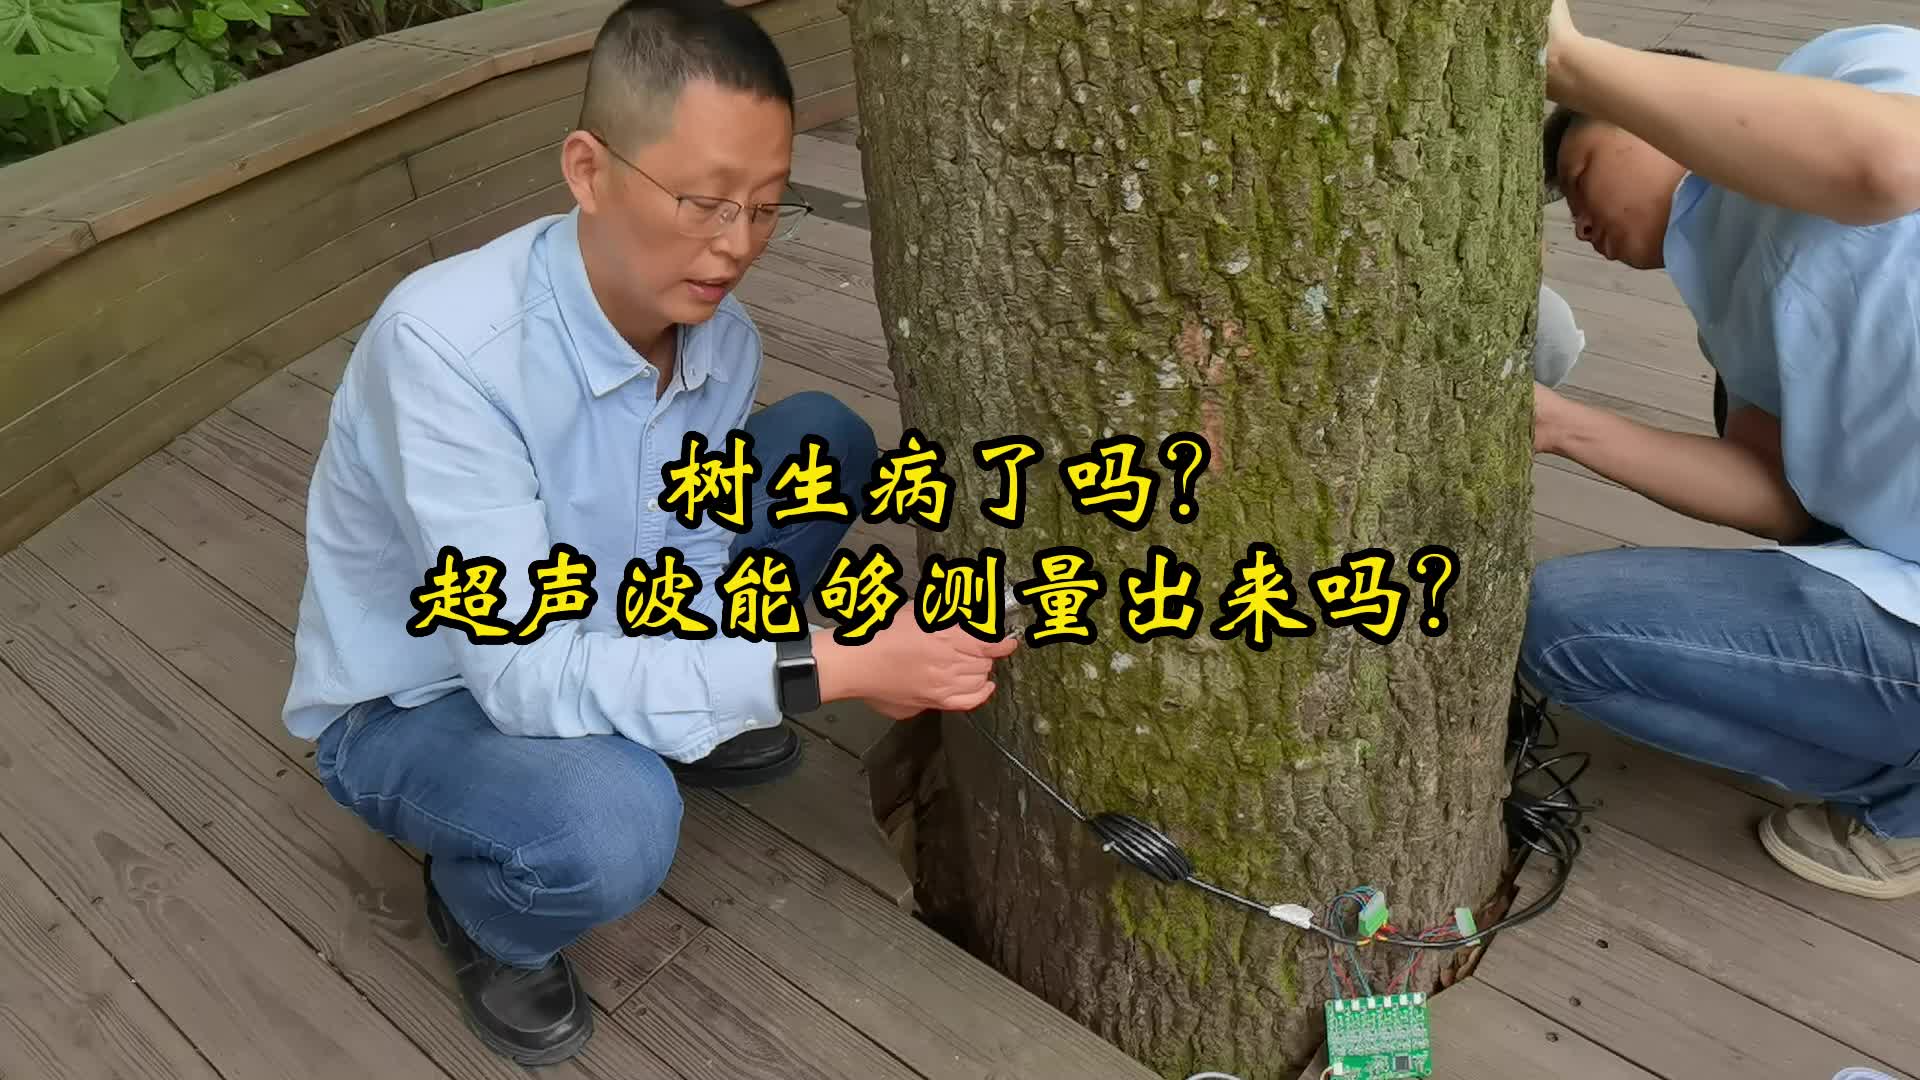 樹生病了嗎？超聲波傳感器能夠測量出來嗎？#探頭#超聲波傳感器 